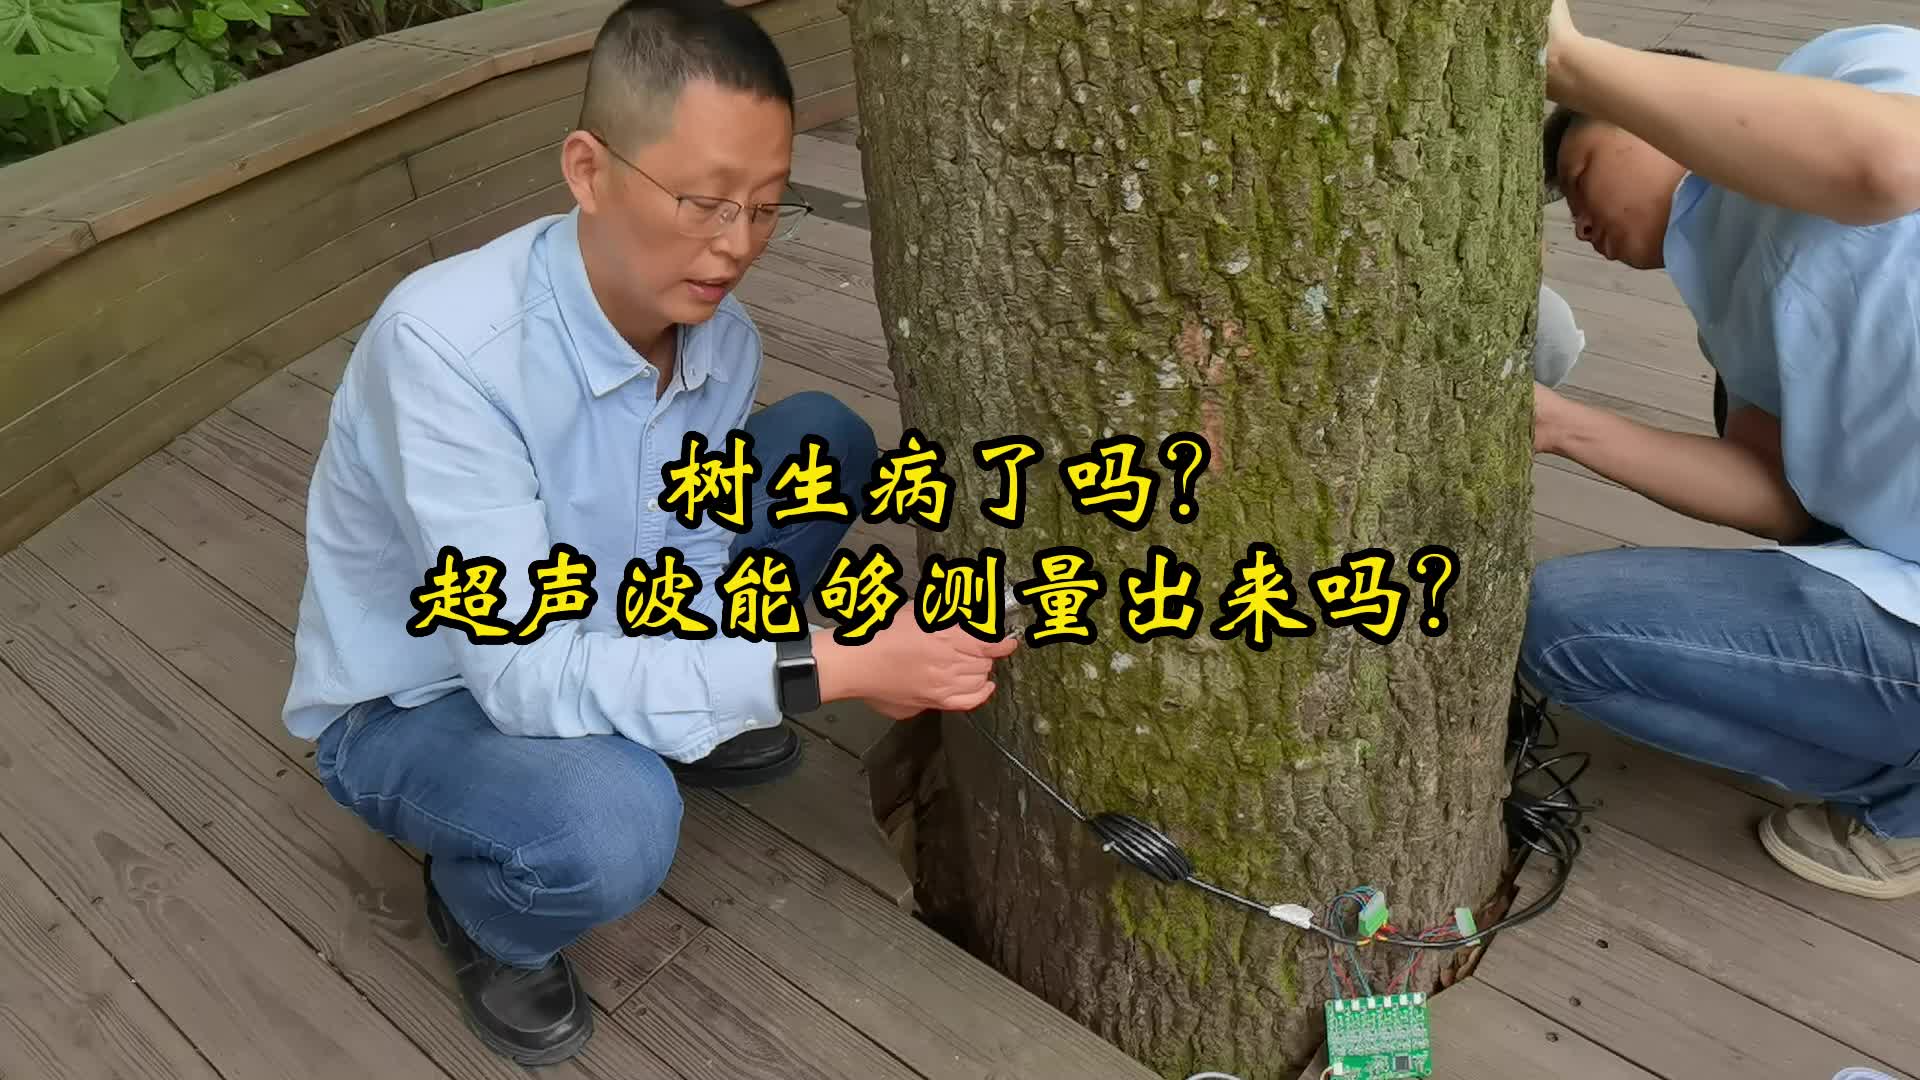 樹生病了嗎？超聲波傳感器能夠測量出來嗎？#探頭#超聲波傳感器 